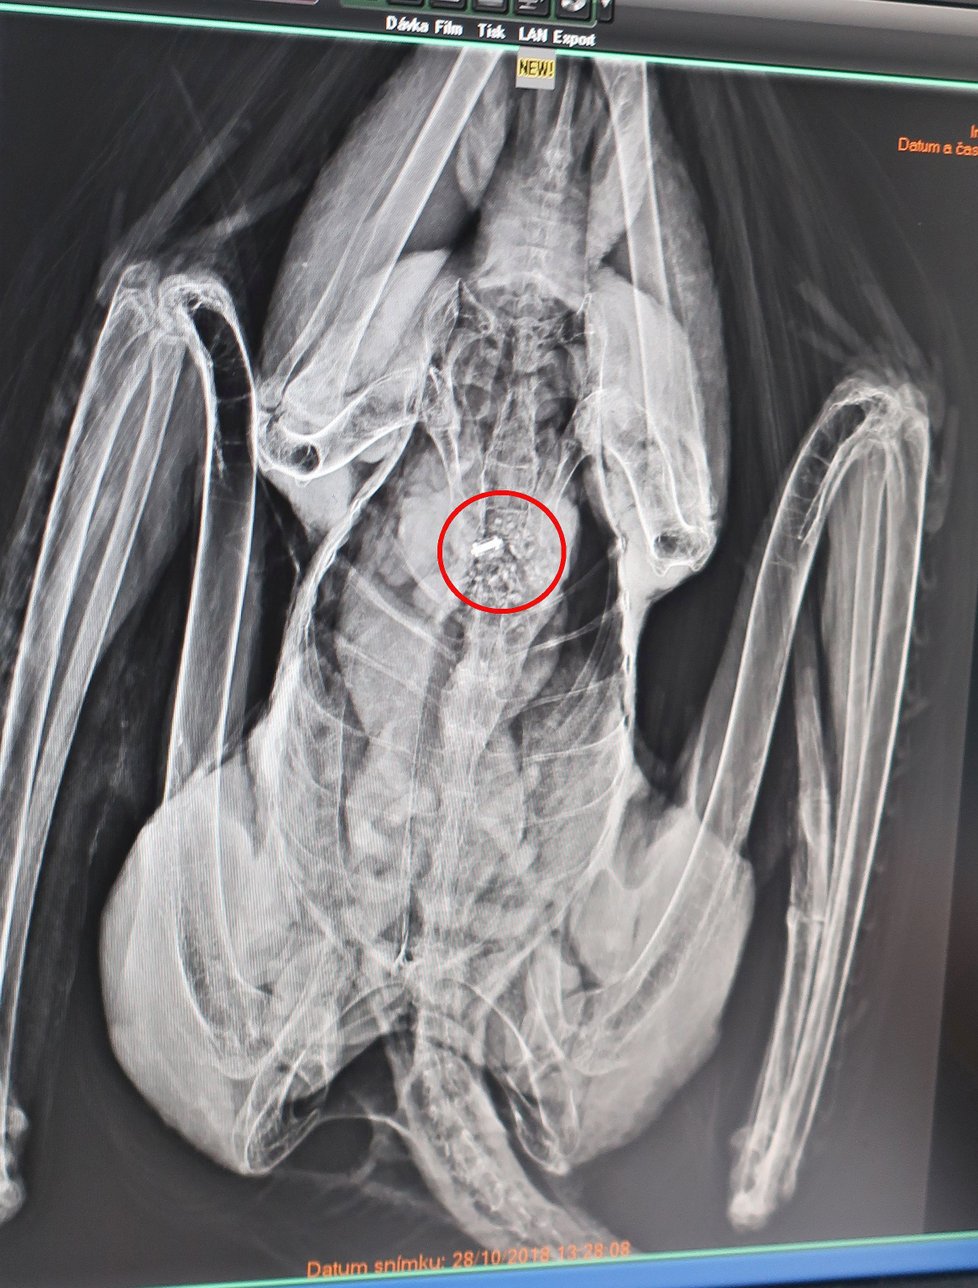 Na rentgenu orla se ukázaly neznámé předměty. Byly to kroužky z polského holuba, kterého pozřel.